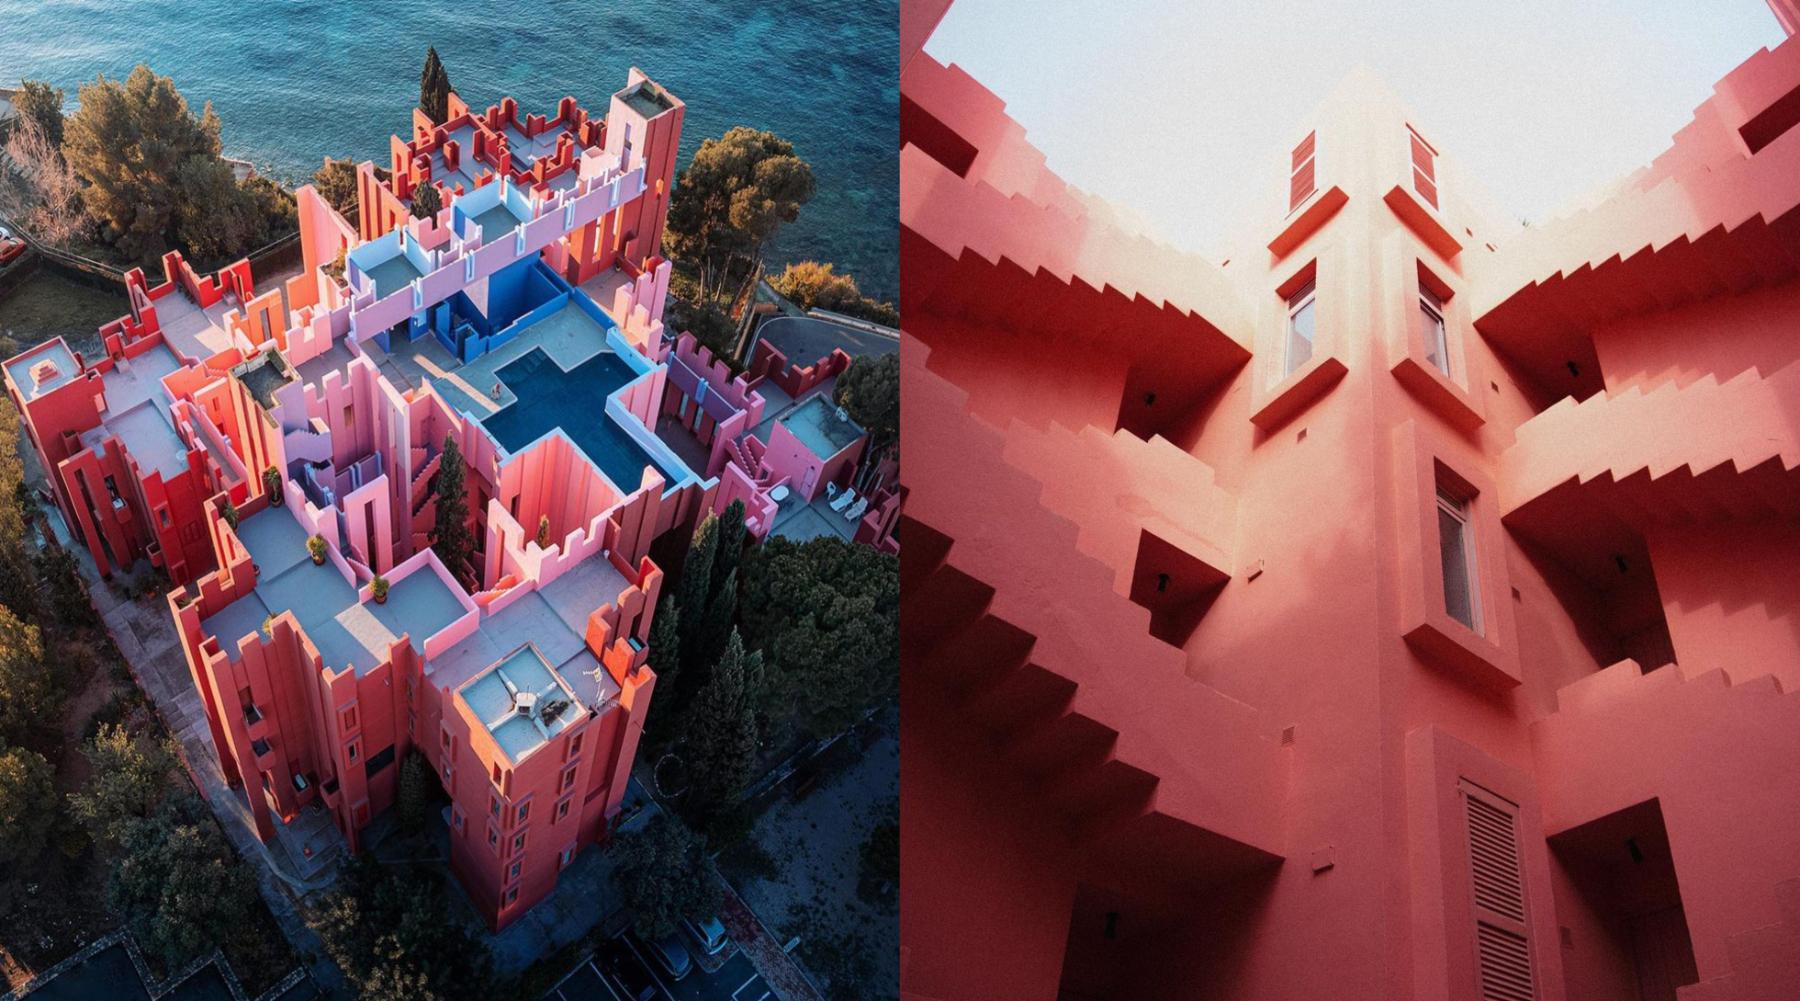 La Muralla Roja: Koloritno modernističko zdanje na obali Mediterana